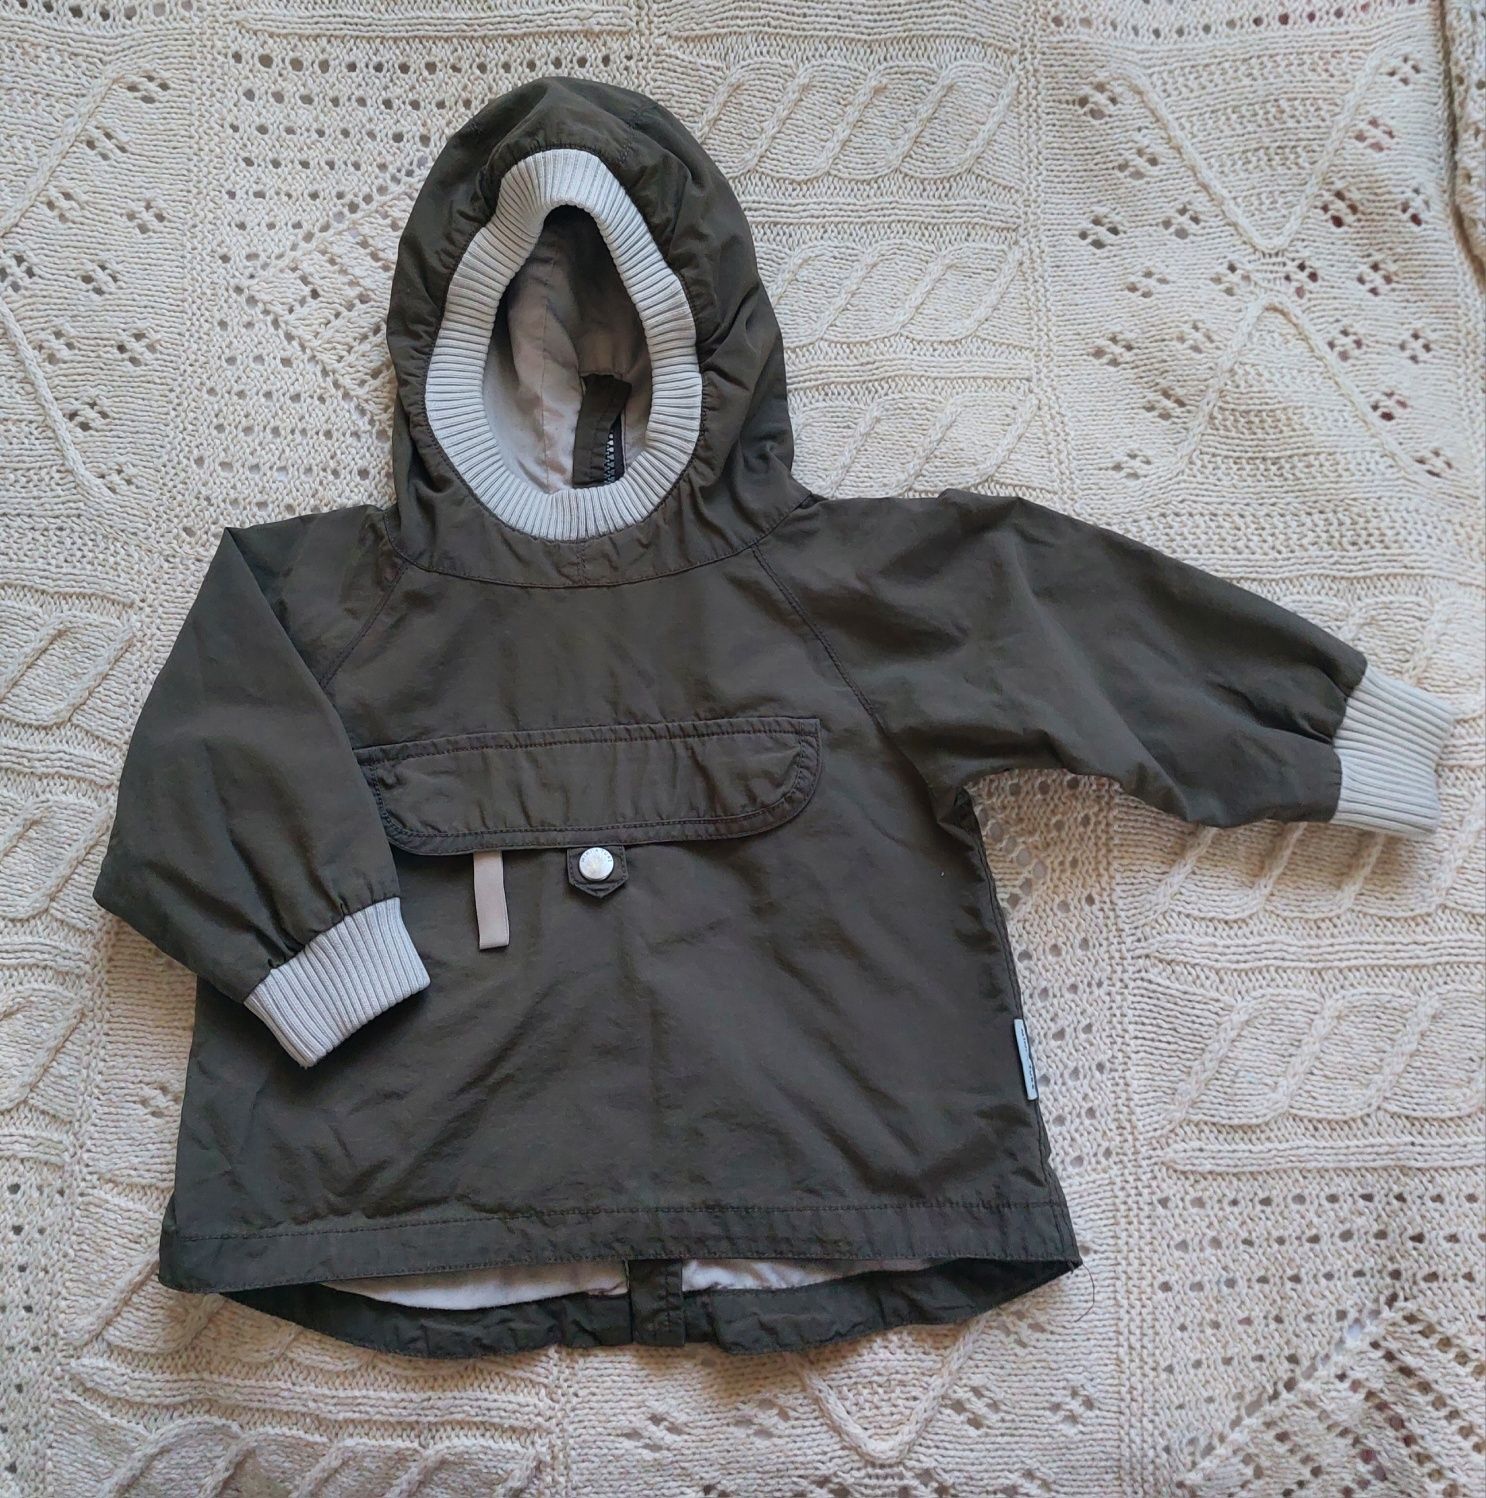 Куртки дитячі набором (365 грн) чи окремо (по 215 грн)